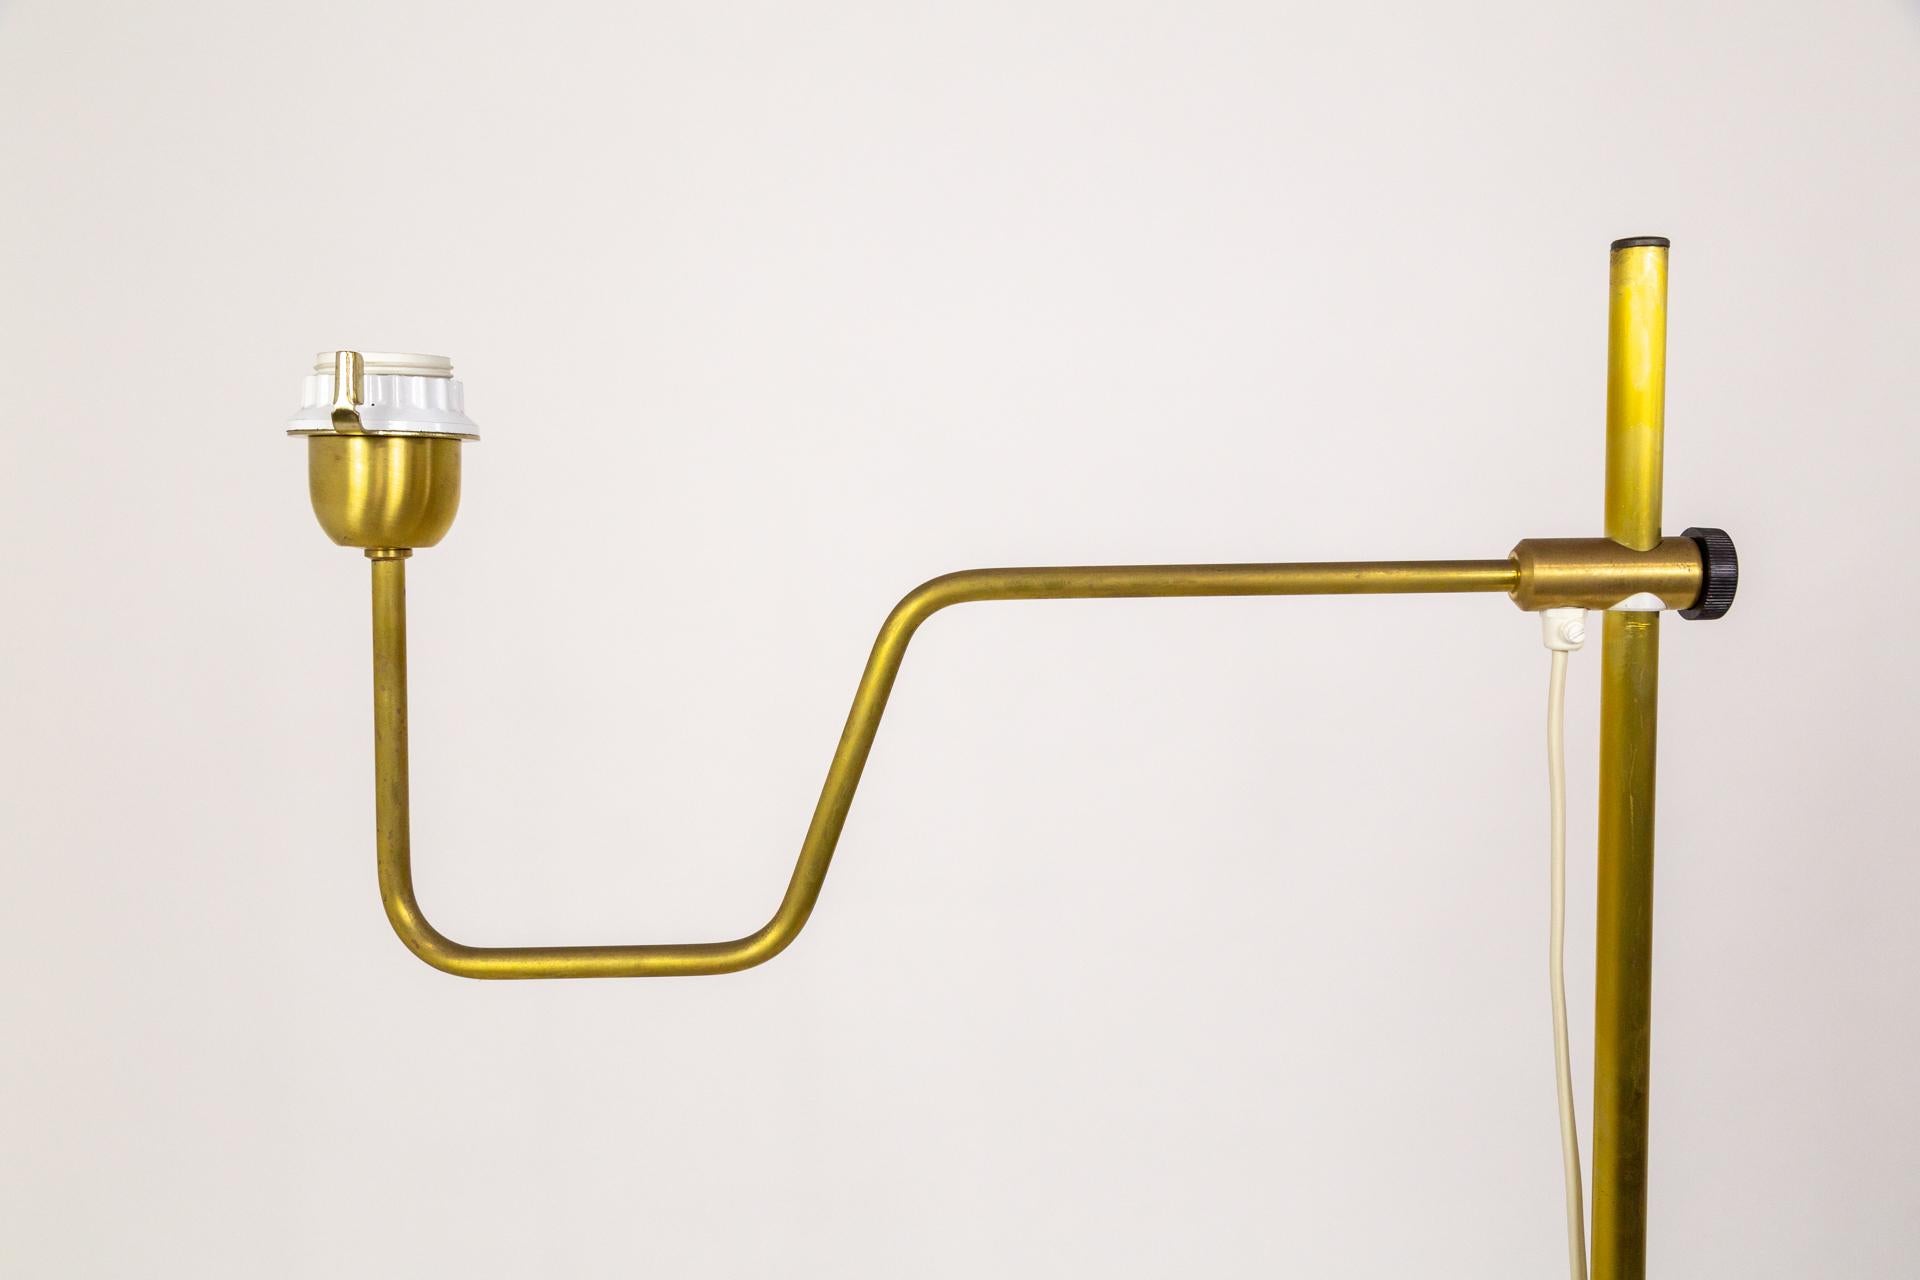 Ein Paar verstellbare Stehlampen aus Messing von Markaryd in Schweden, entworfen von Hans Agne Jakobsson in der Mitte des 20. Jahrhunderts. (Aufkleber des Herstellers auf der Unterseite). 

Höhe: 67 Zoll (170,18 cm)
Breite: 25 Zoll (63,5 cm)
Tiefe: